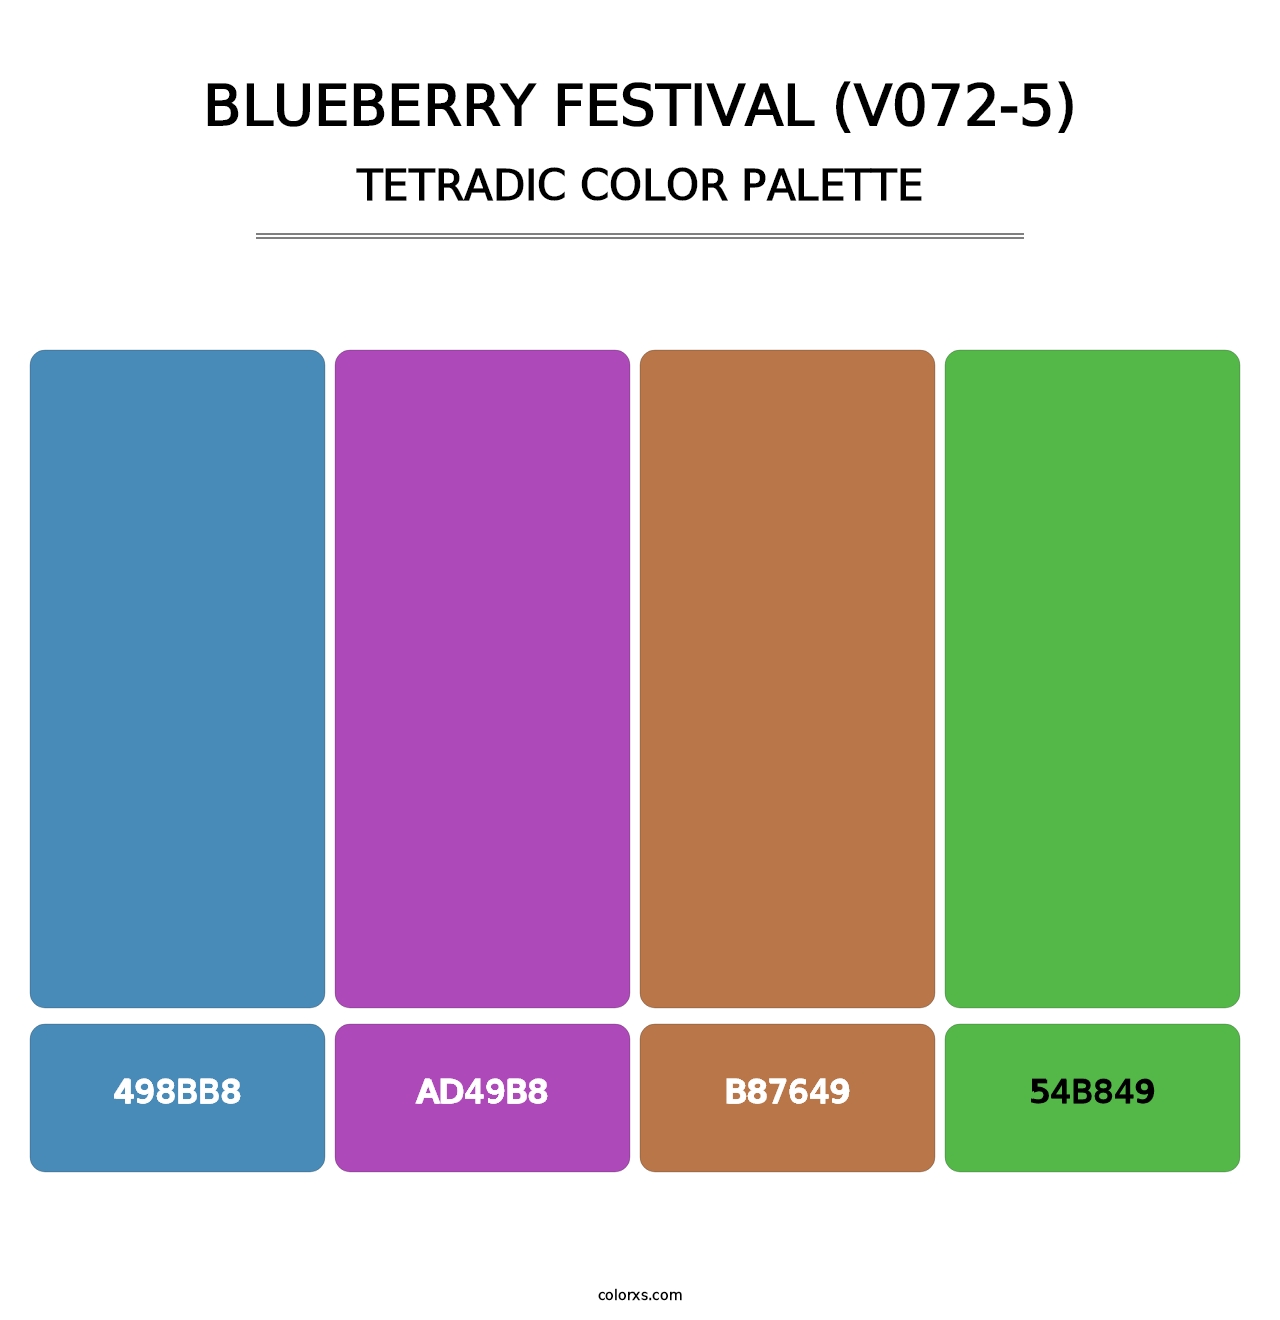 Blueberry Festival (V072-5) - Tetradic Color Palette